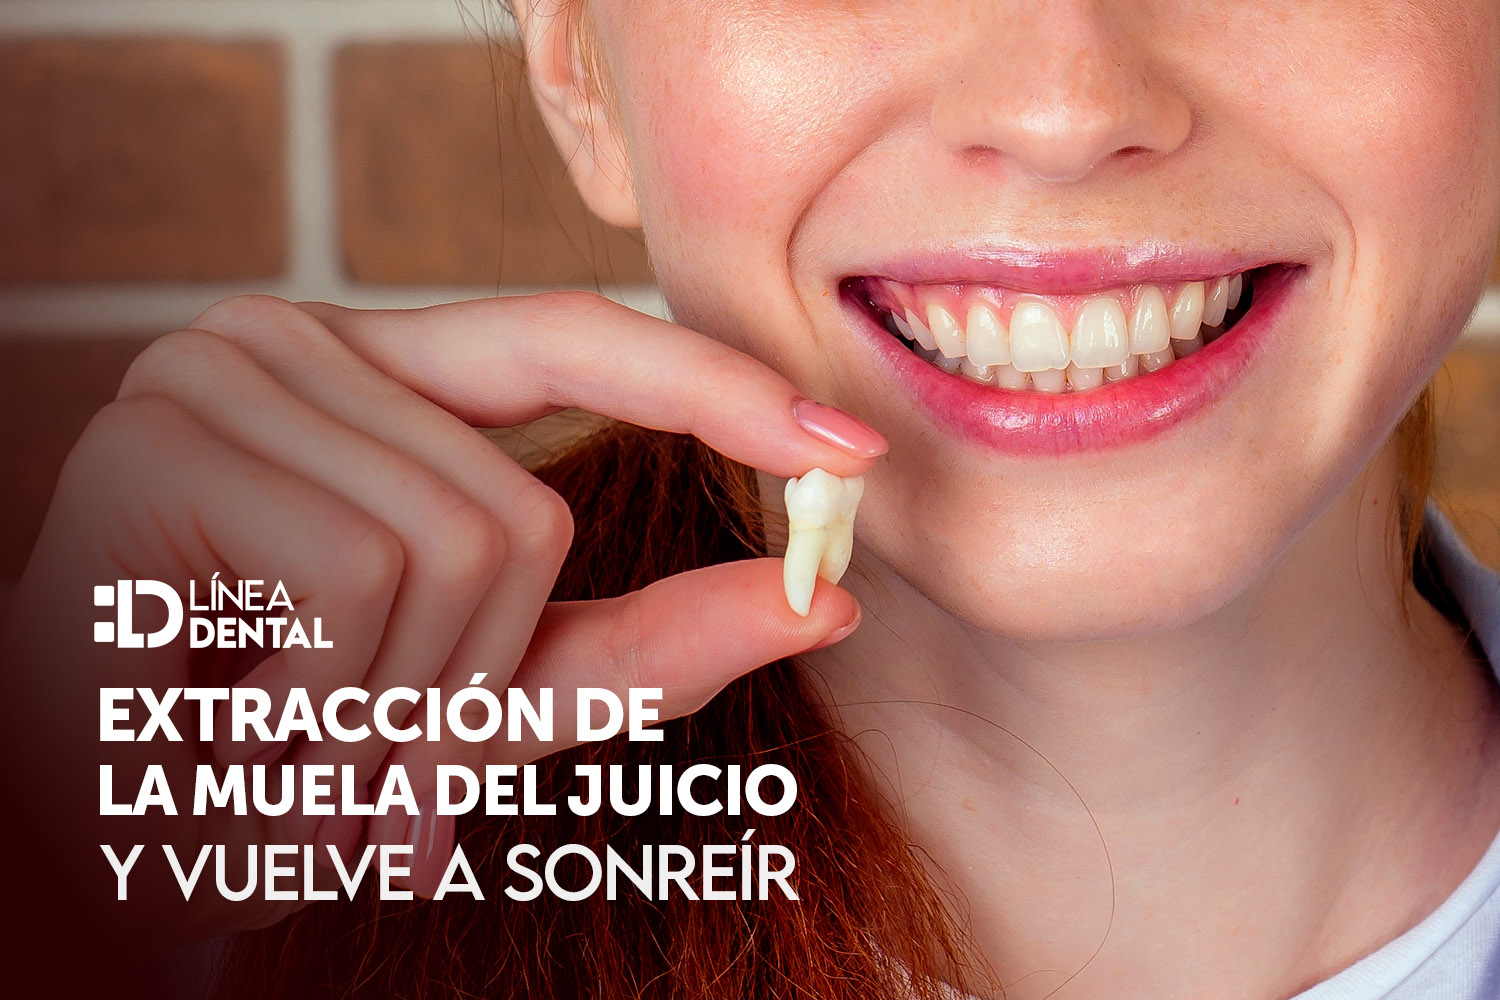 extraccion-muela-juicio-dentista-odontologo-linea-dental-ciudad-real-miguelturra